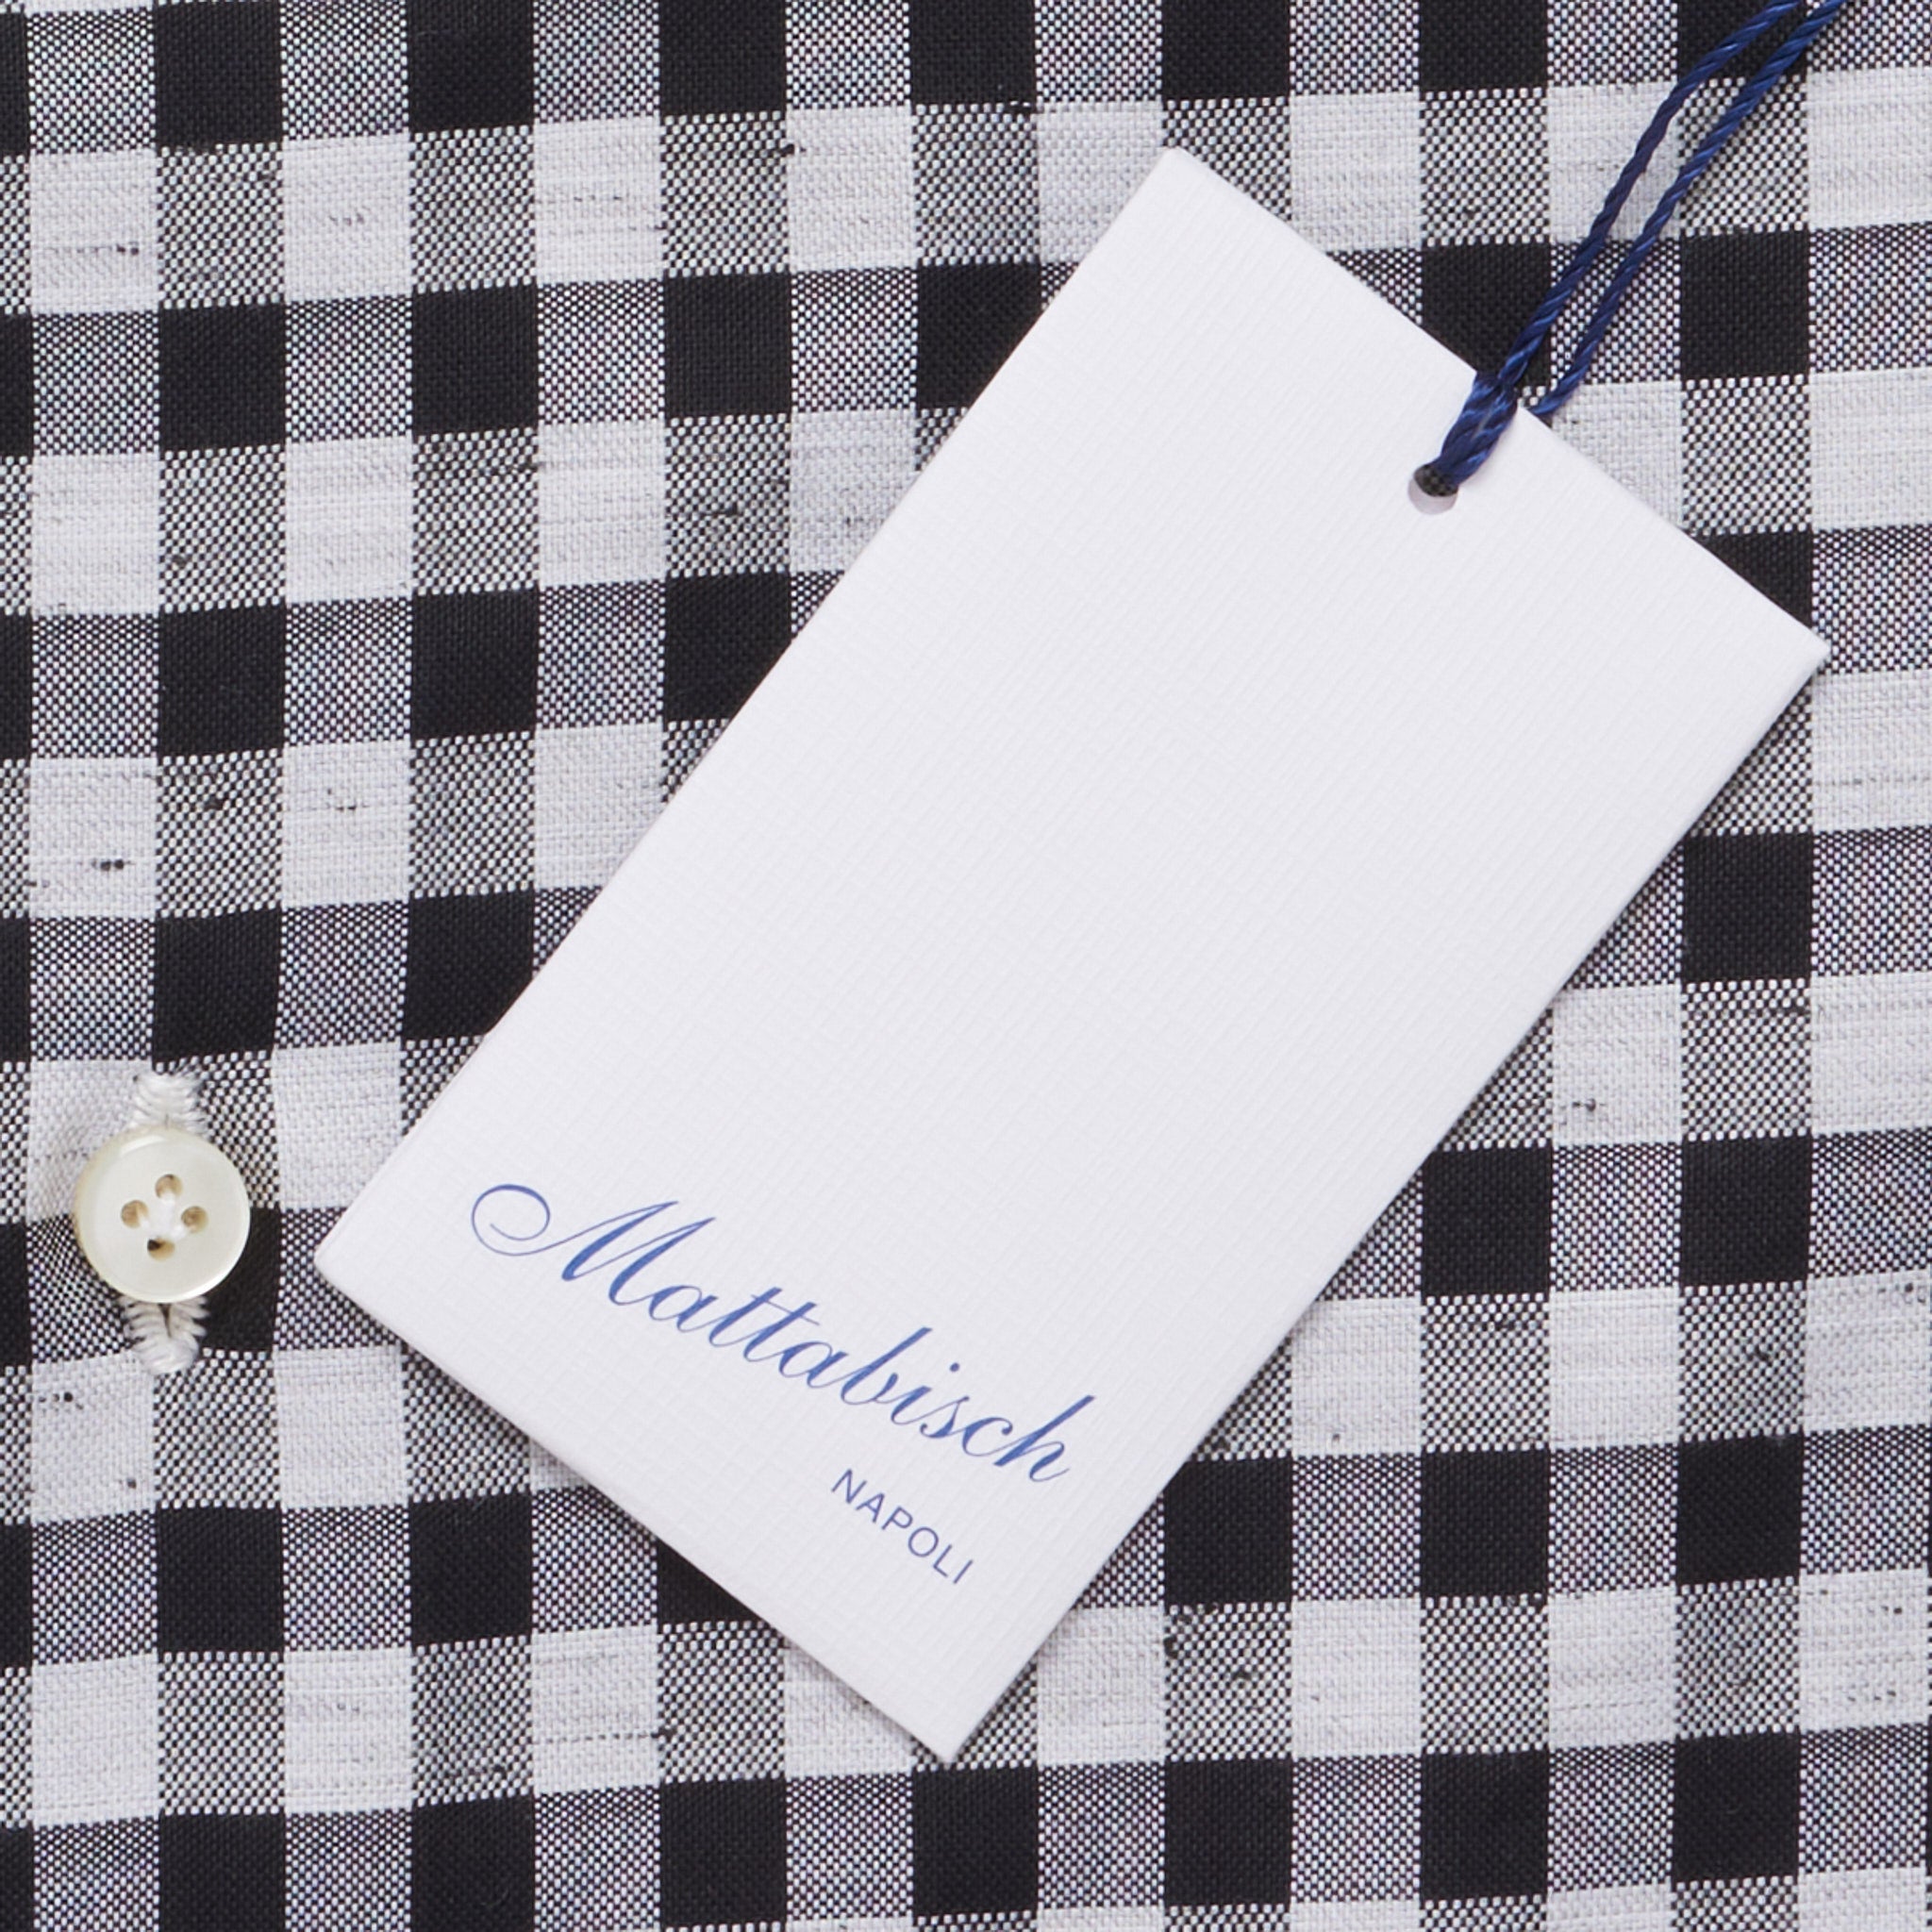 MATTABISCH by Kiton Handmade Black-White Checkered Shirt 40 NEW 15.75 Slim MATTABISCH